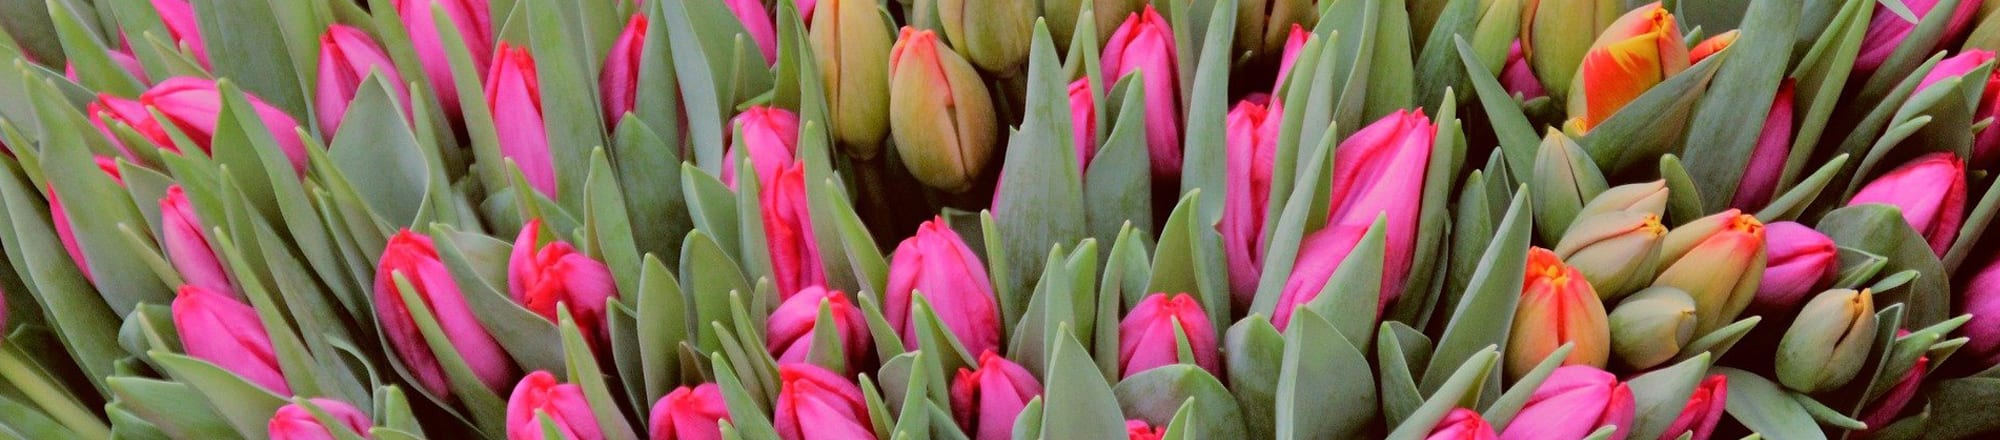 Les tulipes sont synonymes de vie, d'immortalité et d'amour